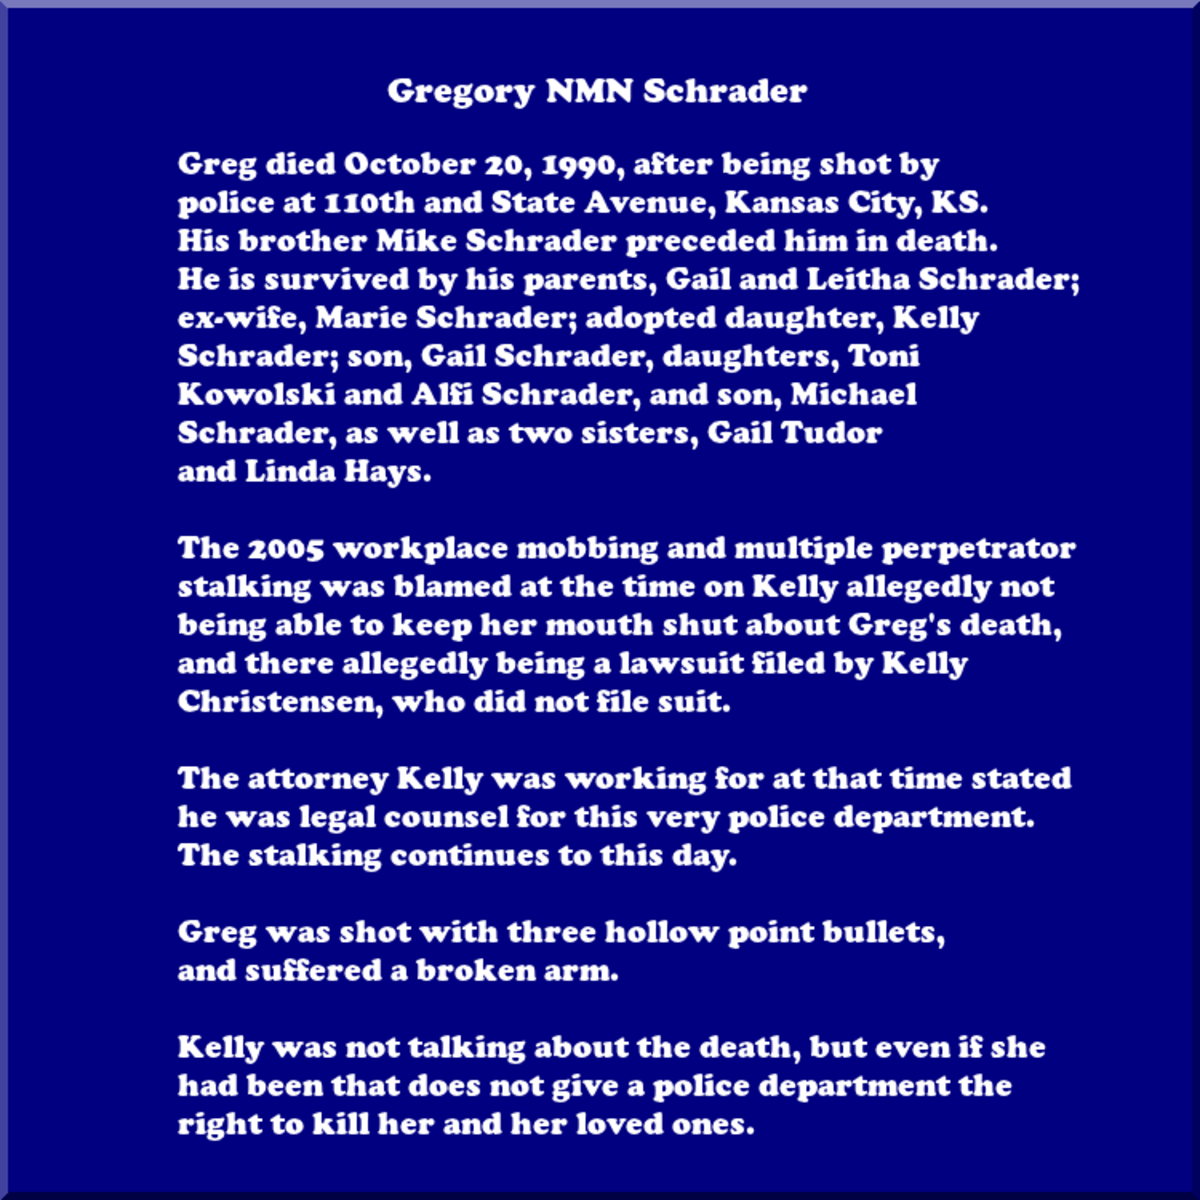 Gregory NMN Schrader's Death